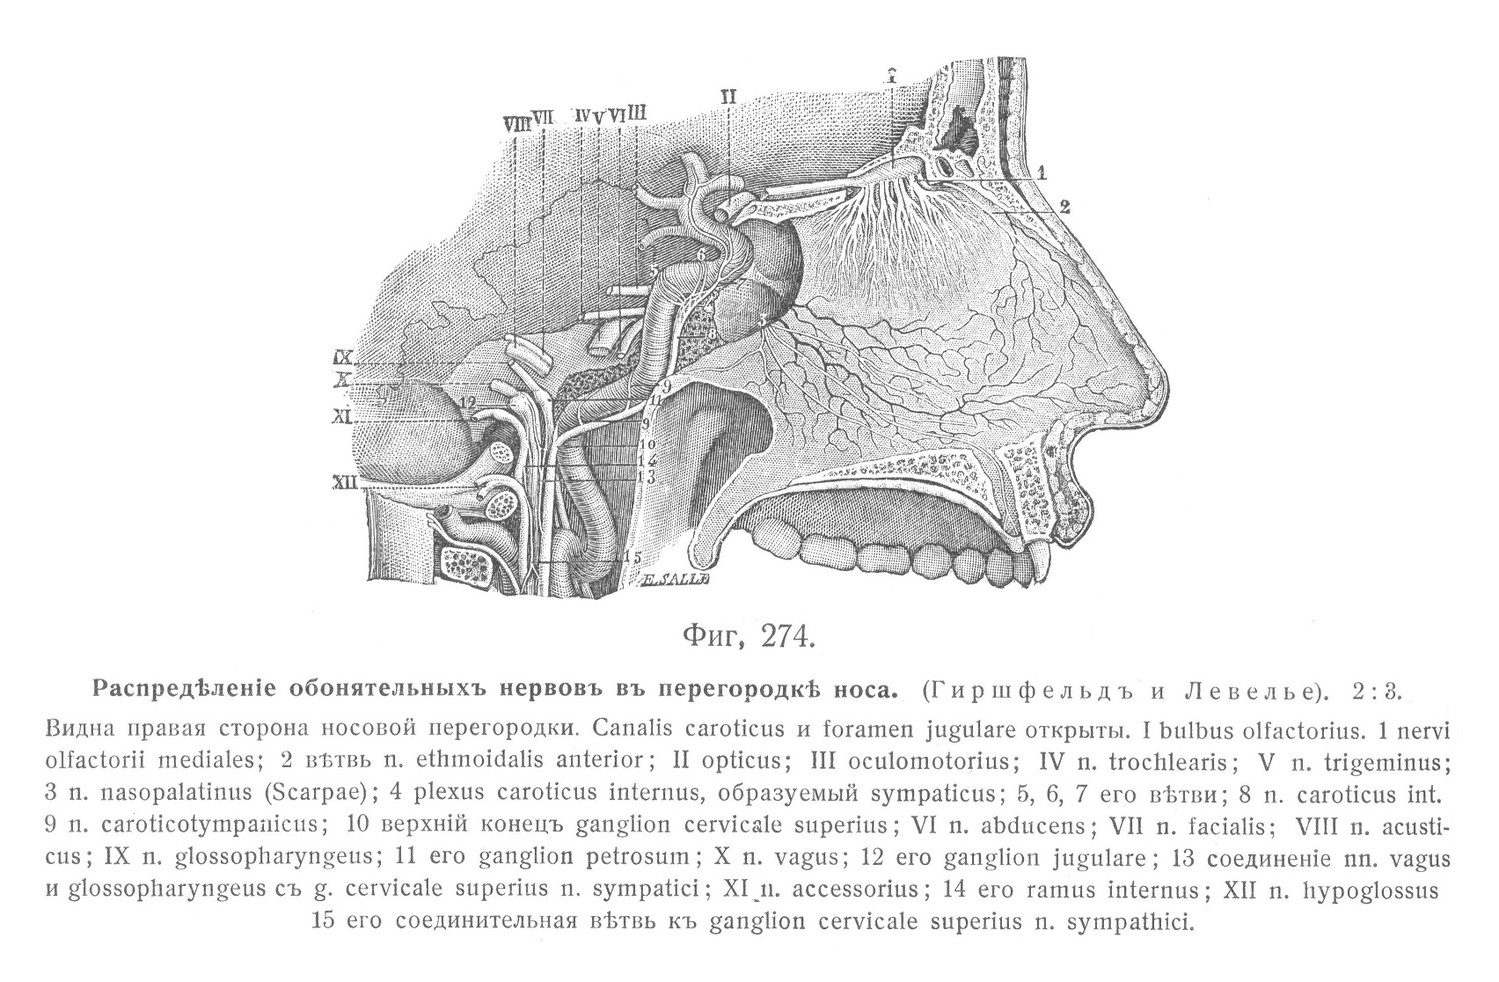 Распределение обонятельных нервов в перегородке носа